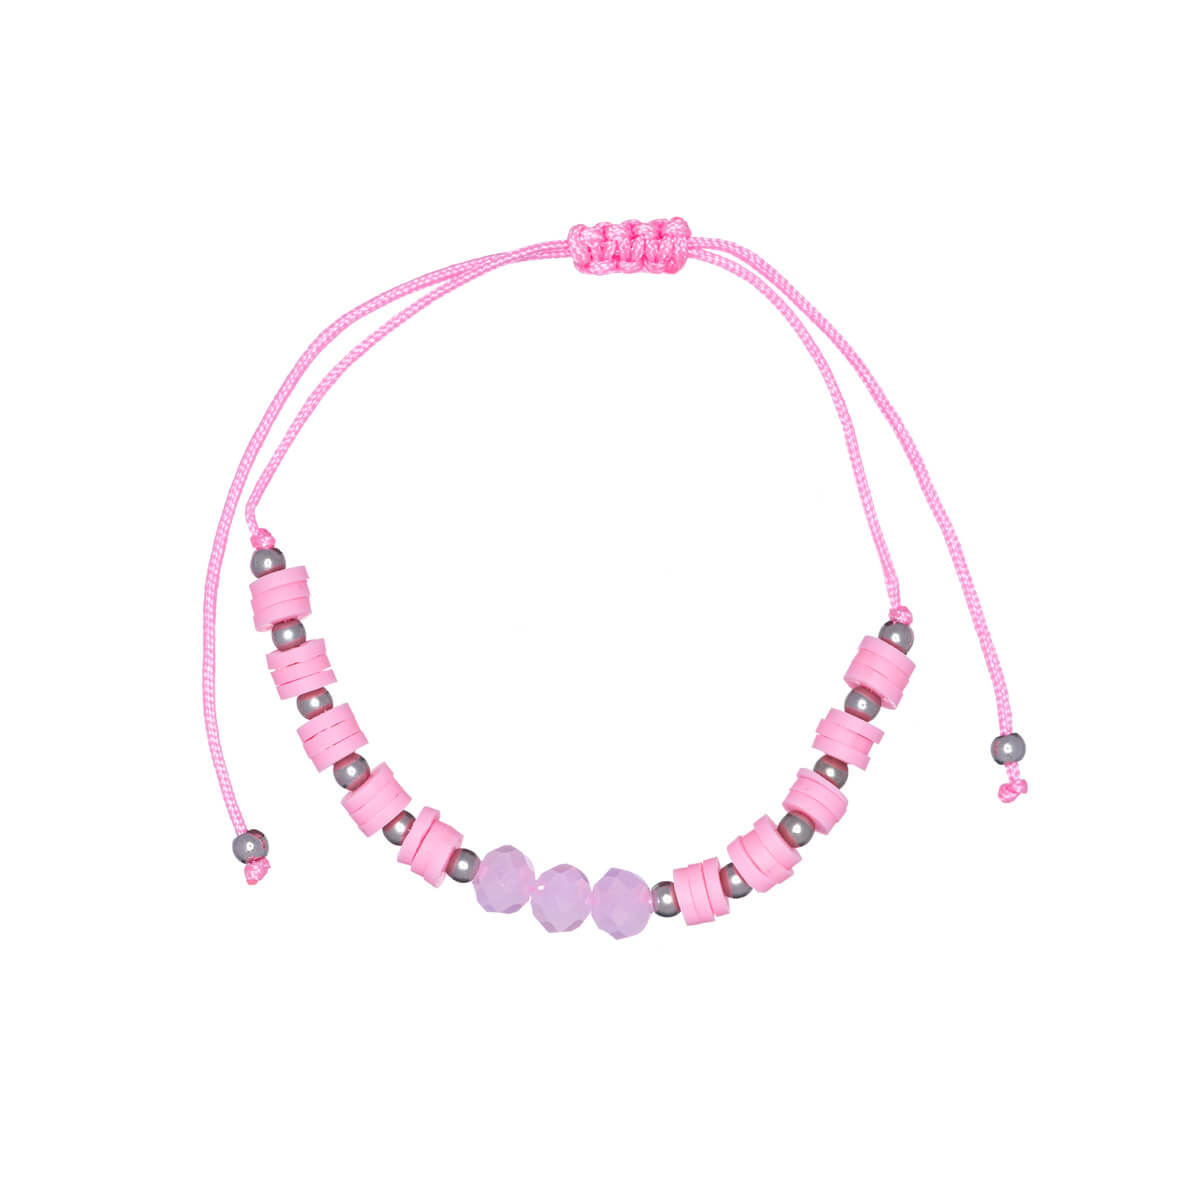 Coloured pearl bracelet adjustable